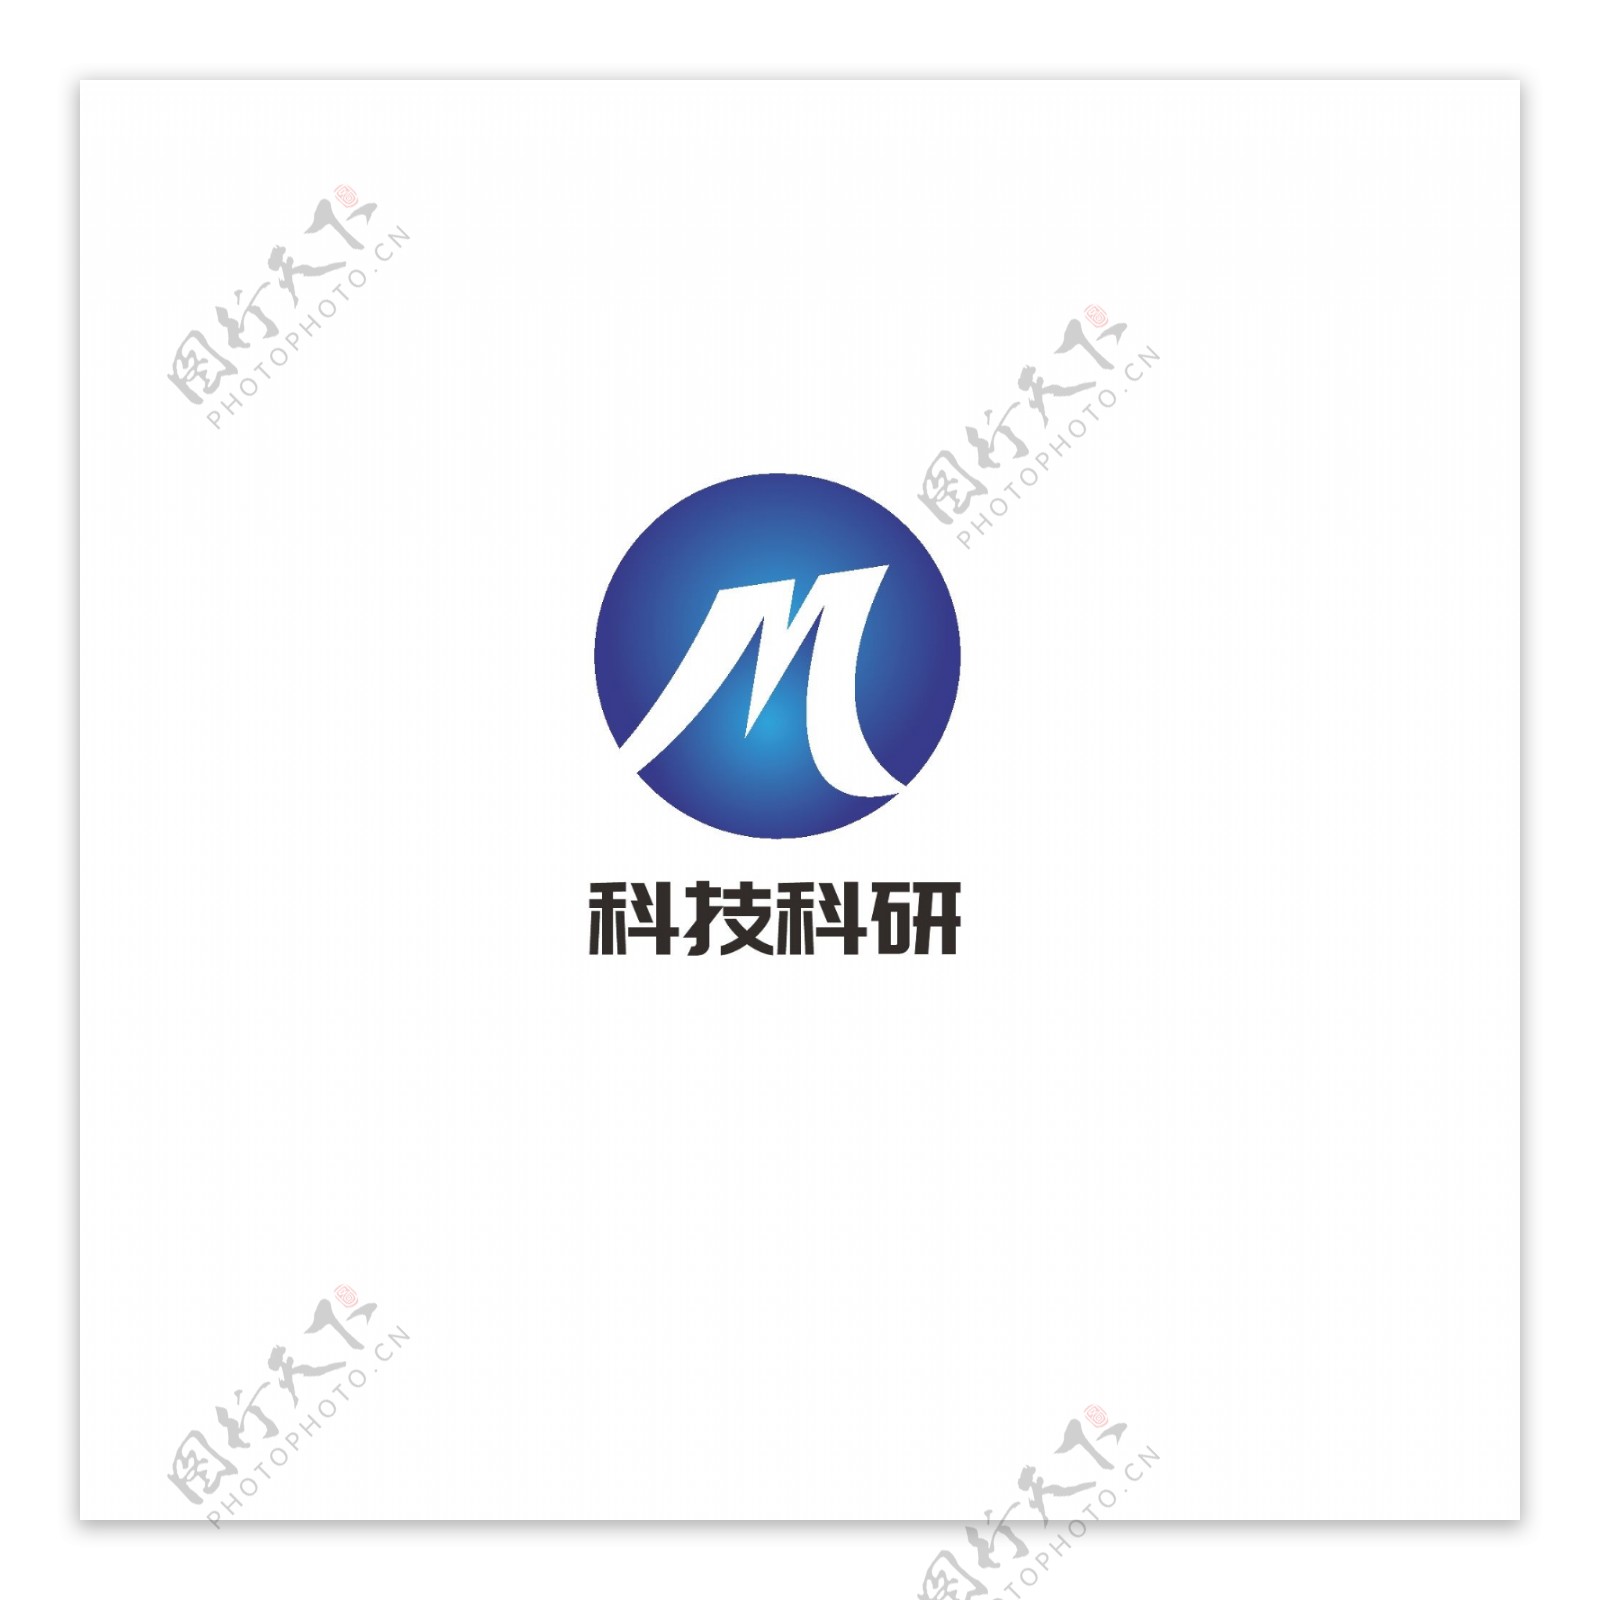 科技科研logo设计